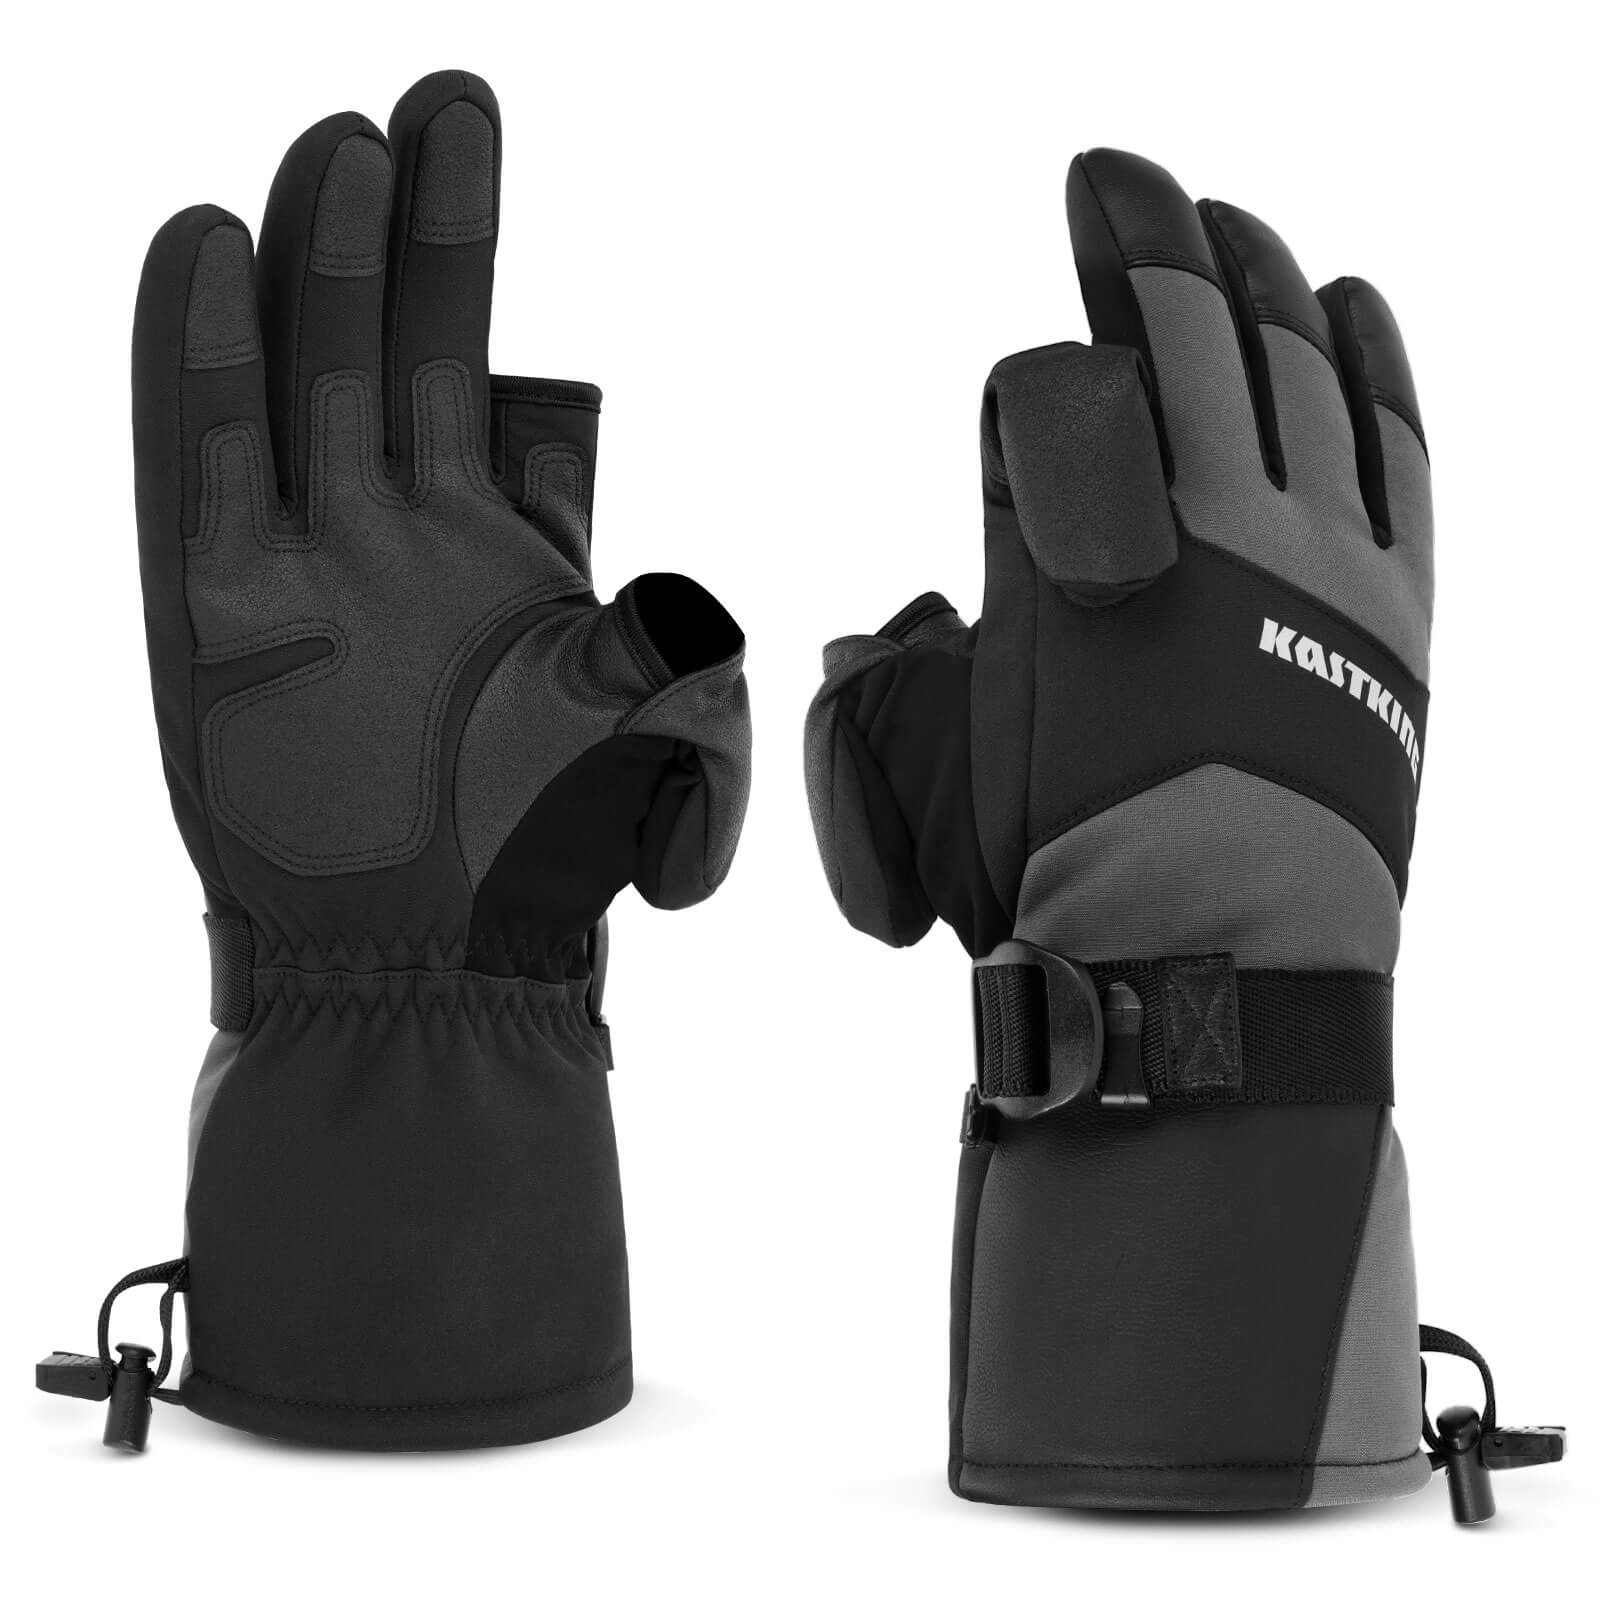 KastKing Mountain Morph 2 Fingerless Gloves - Gray and Black / M